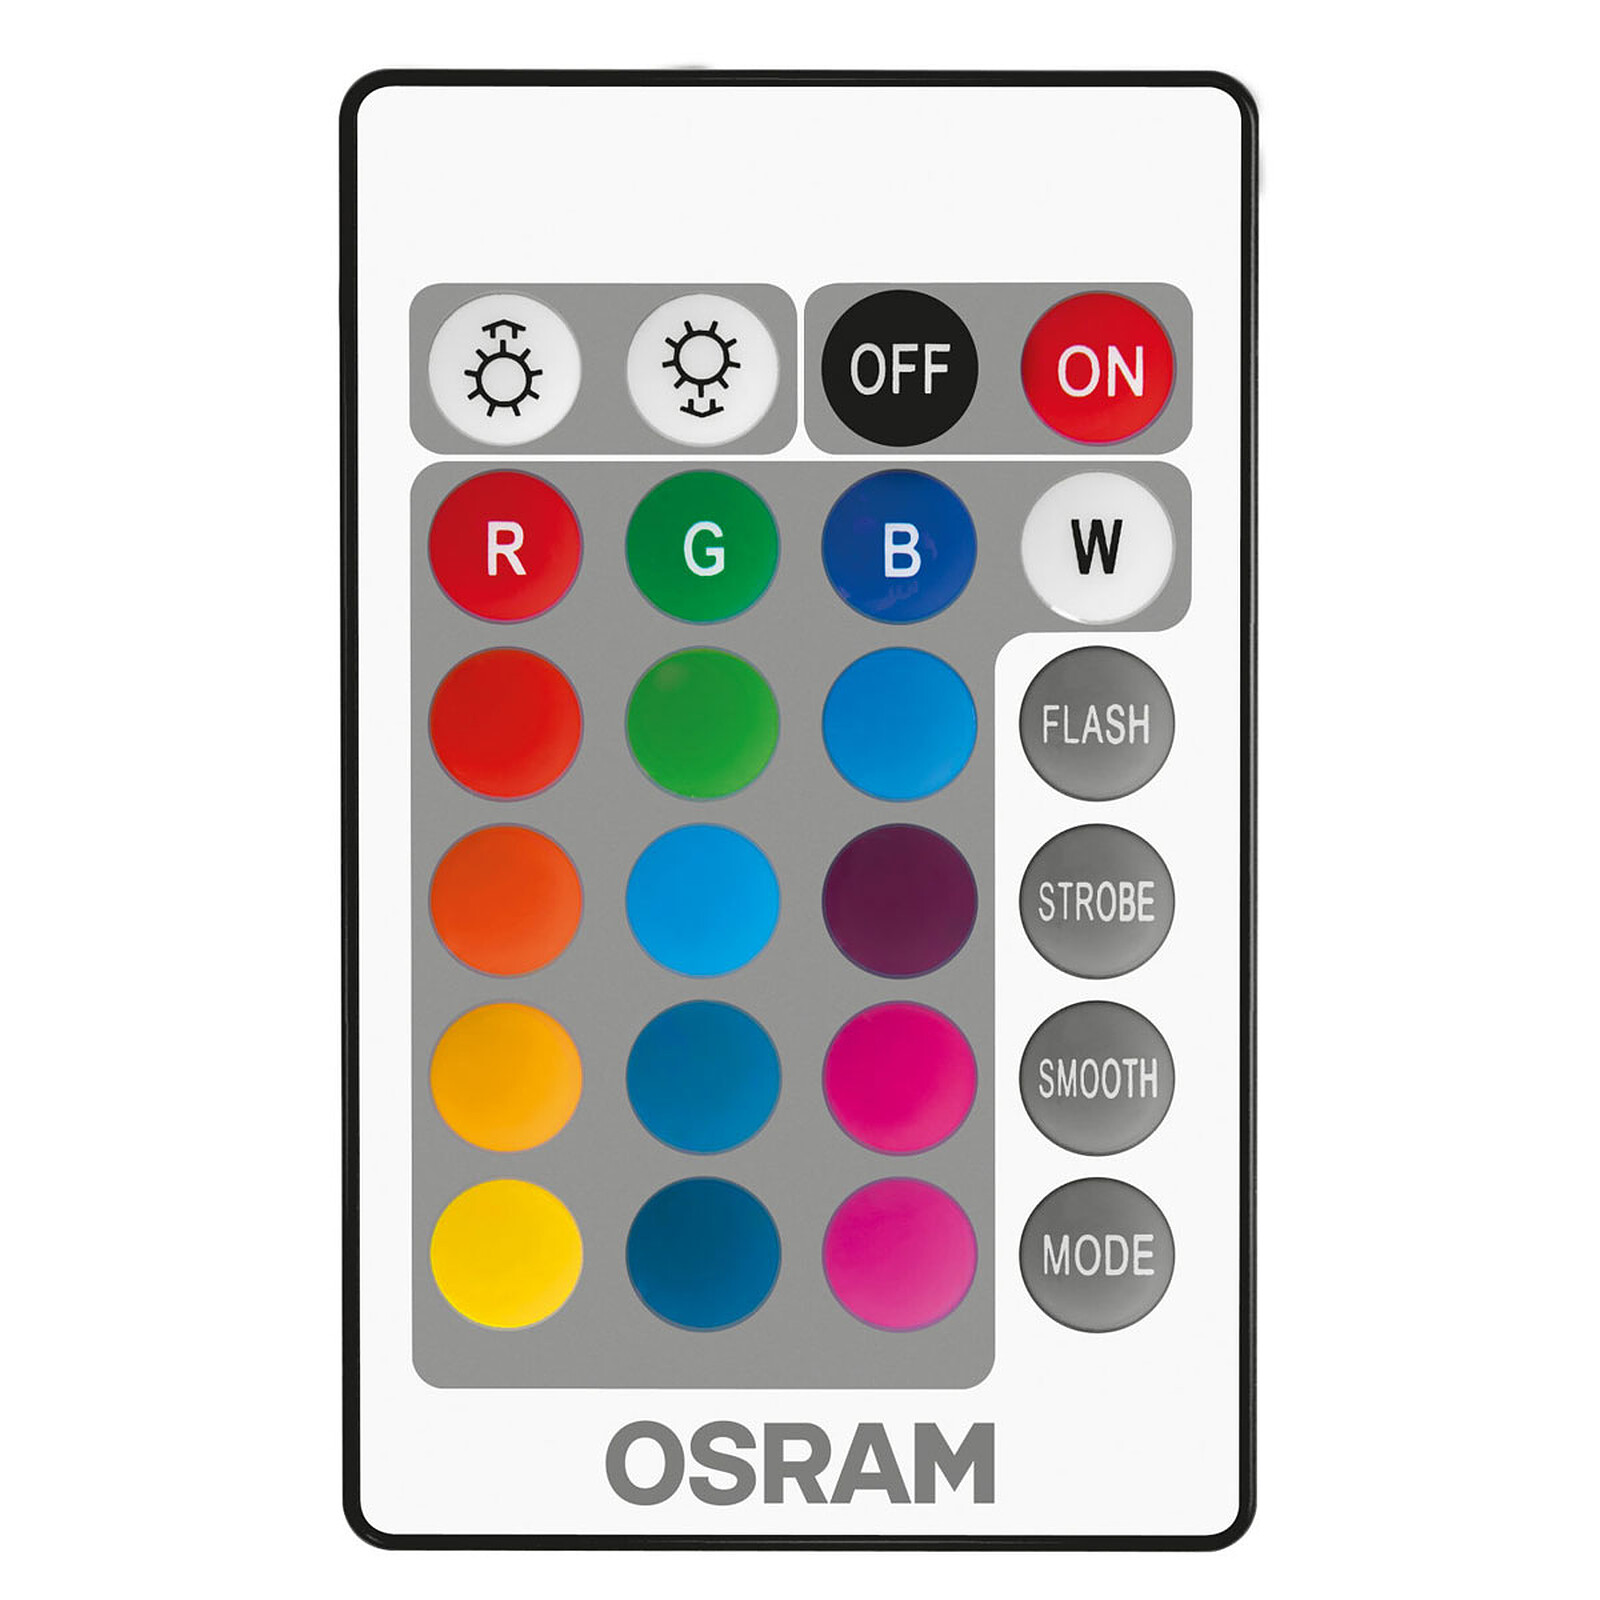 OSRAM Ampoule LED Retrofit RGBW Télécommande GU10 4.5W (25W) A - Ampoule LED  - Garantie 3 ans LDLC